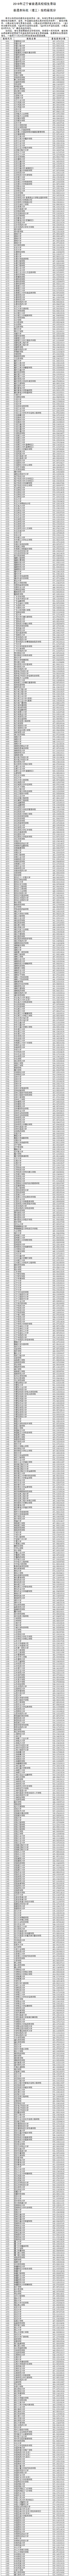 2019辽宁本科投档分数线【理科】